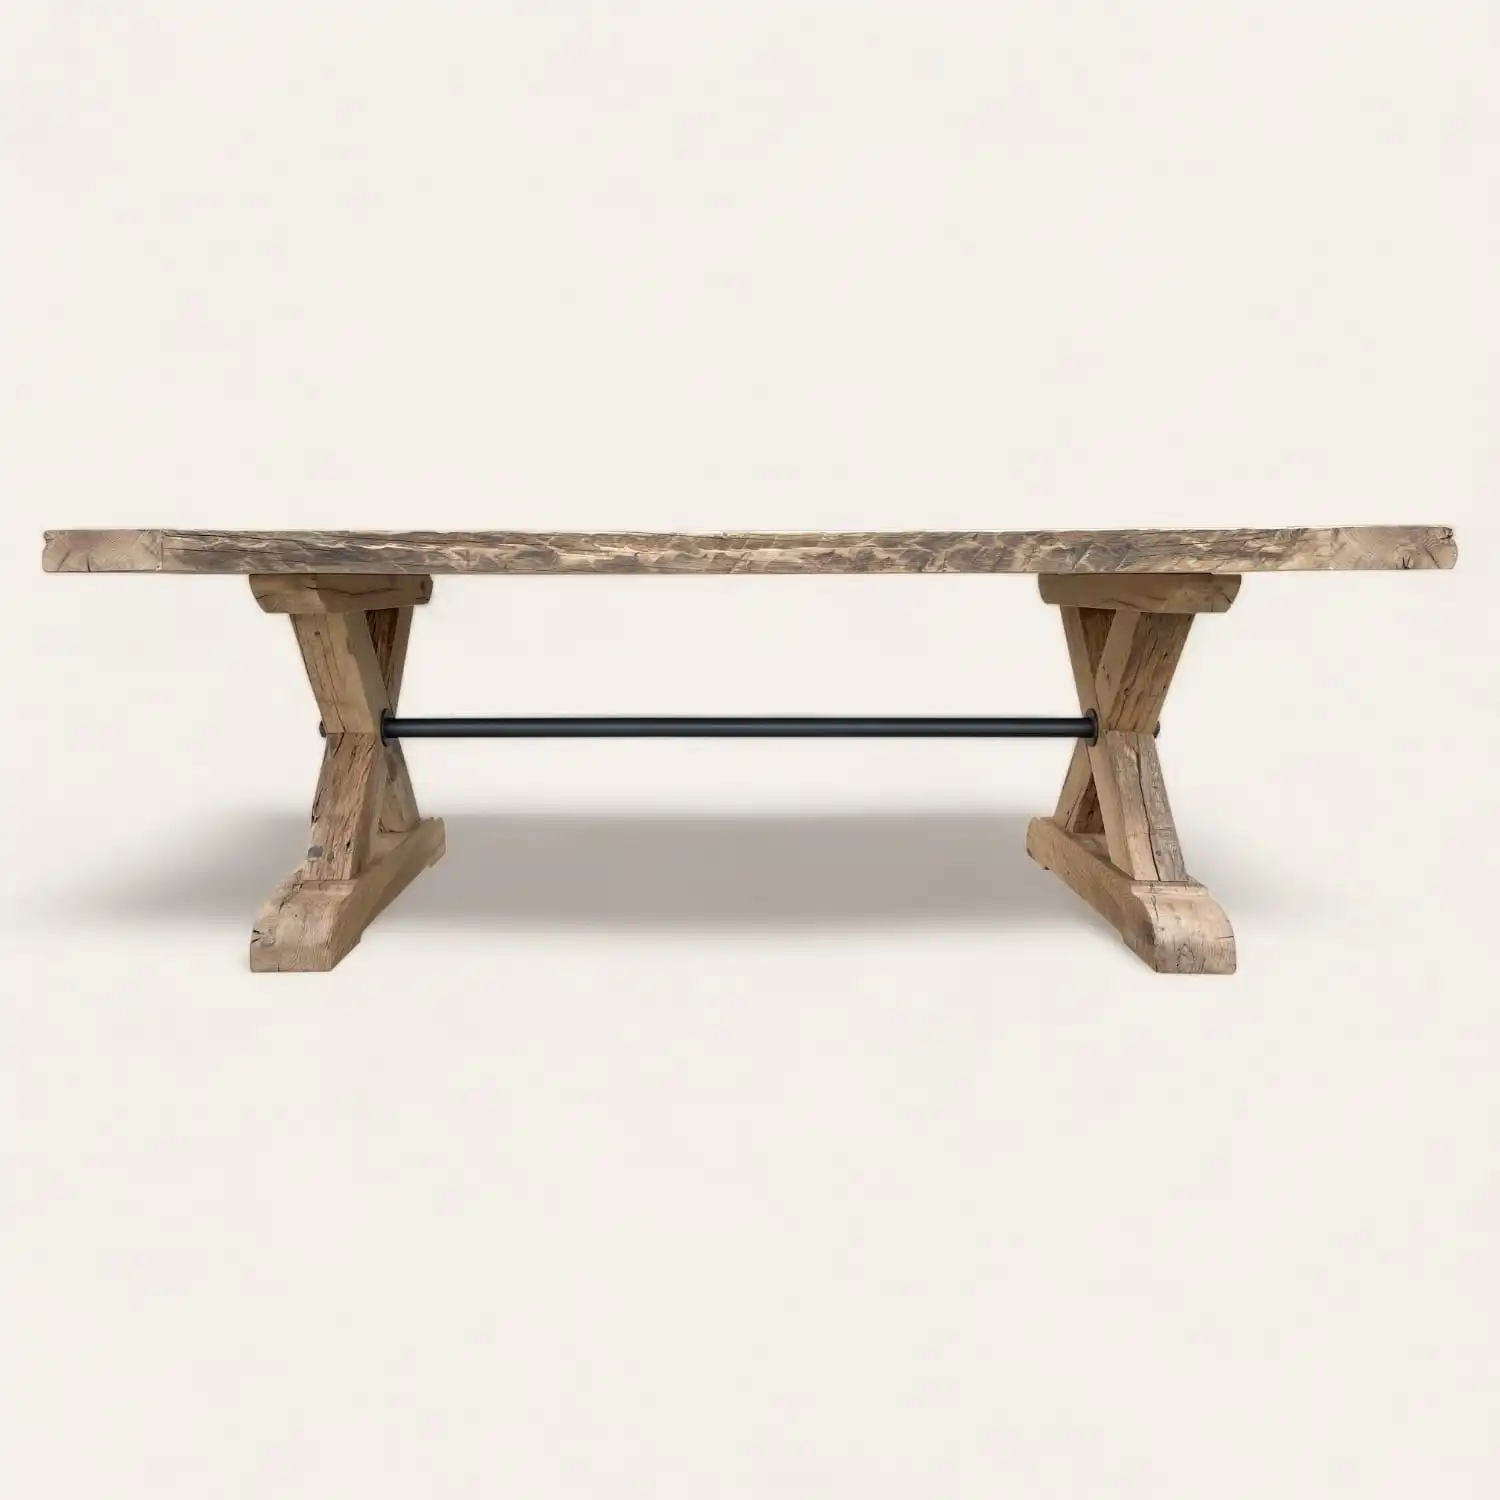  Vue latérale d'une longue table de ferme rustique avec des pieds en X caractéristiques et une barre de soutien métallique horizontale, illustrant un mélange d'artisanat traditionnel et de design industriel moderne. 